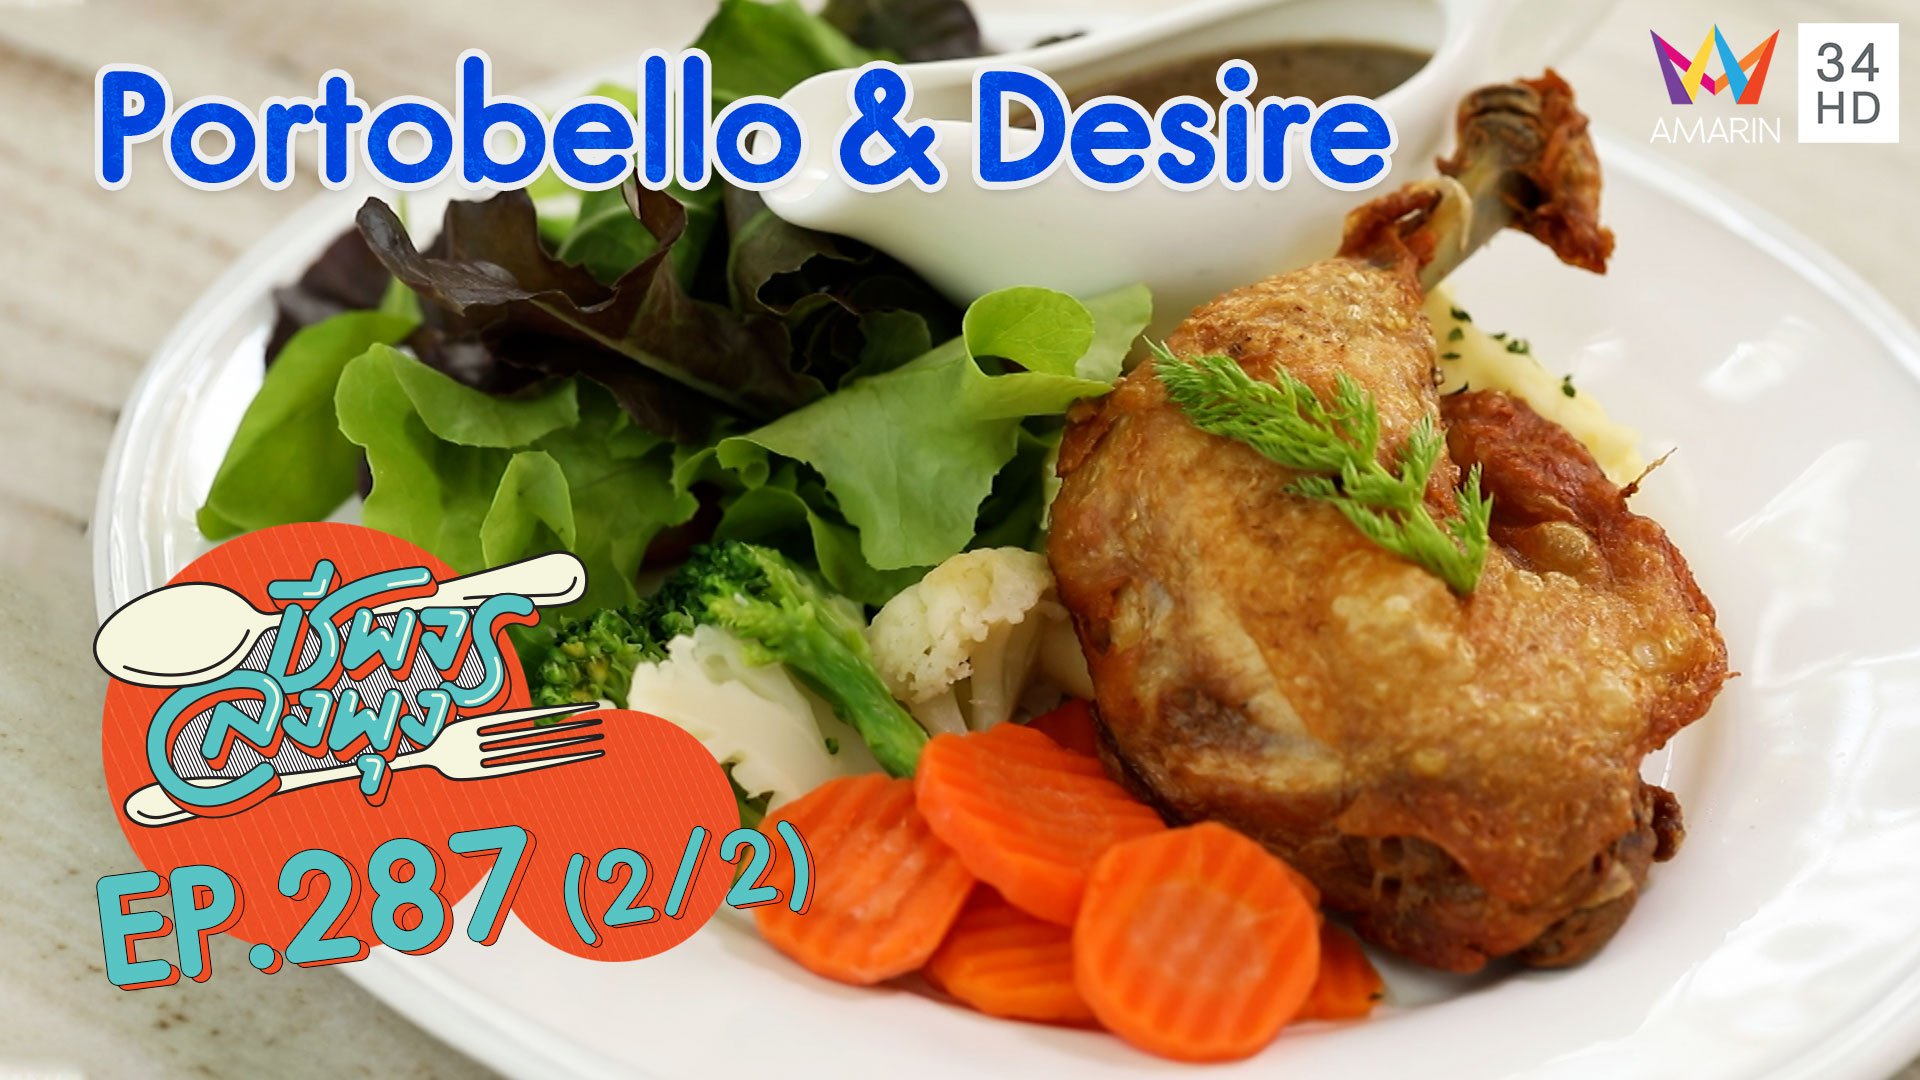 ลิ้มรสชาติอาหารสุดหรู สไตล์ผู้ดีอังกฤษ @ ร้าน Portobello & Desire | ชีพจรลงพุง | 21 มี.ค. 64 (2/2) | AMARIN TVHD34